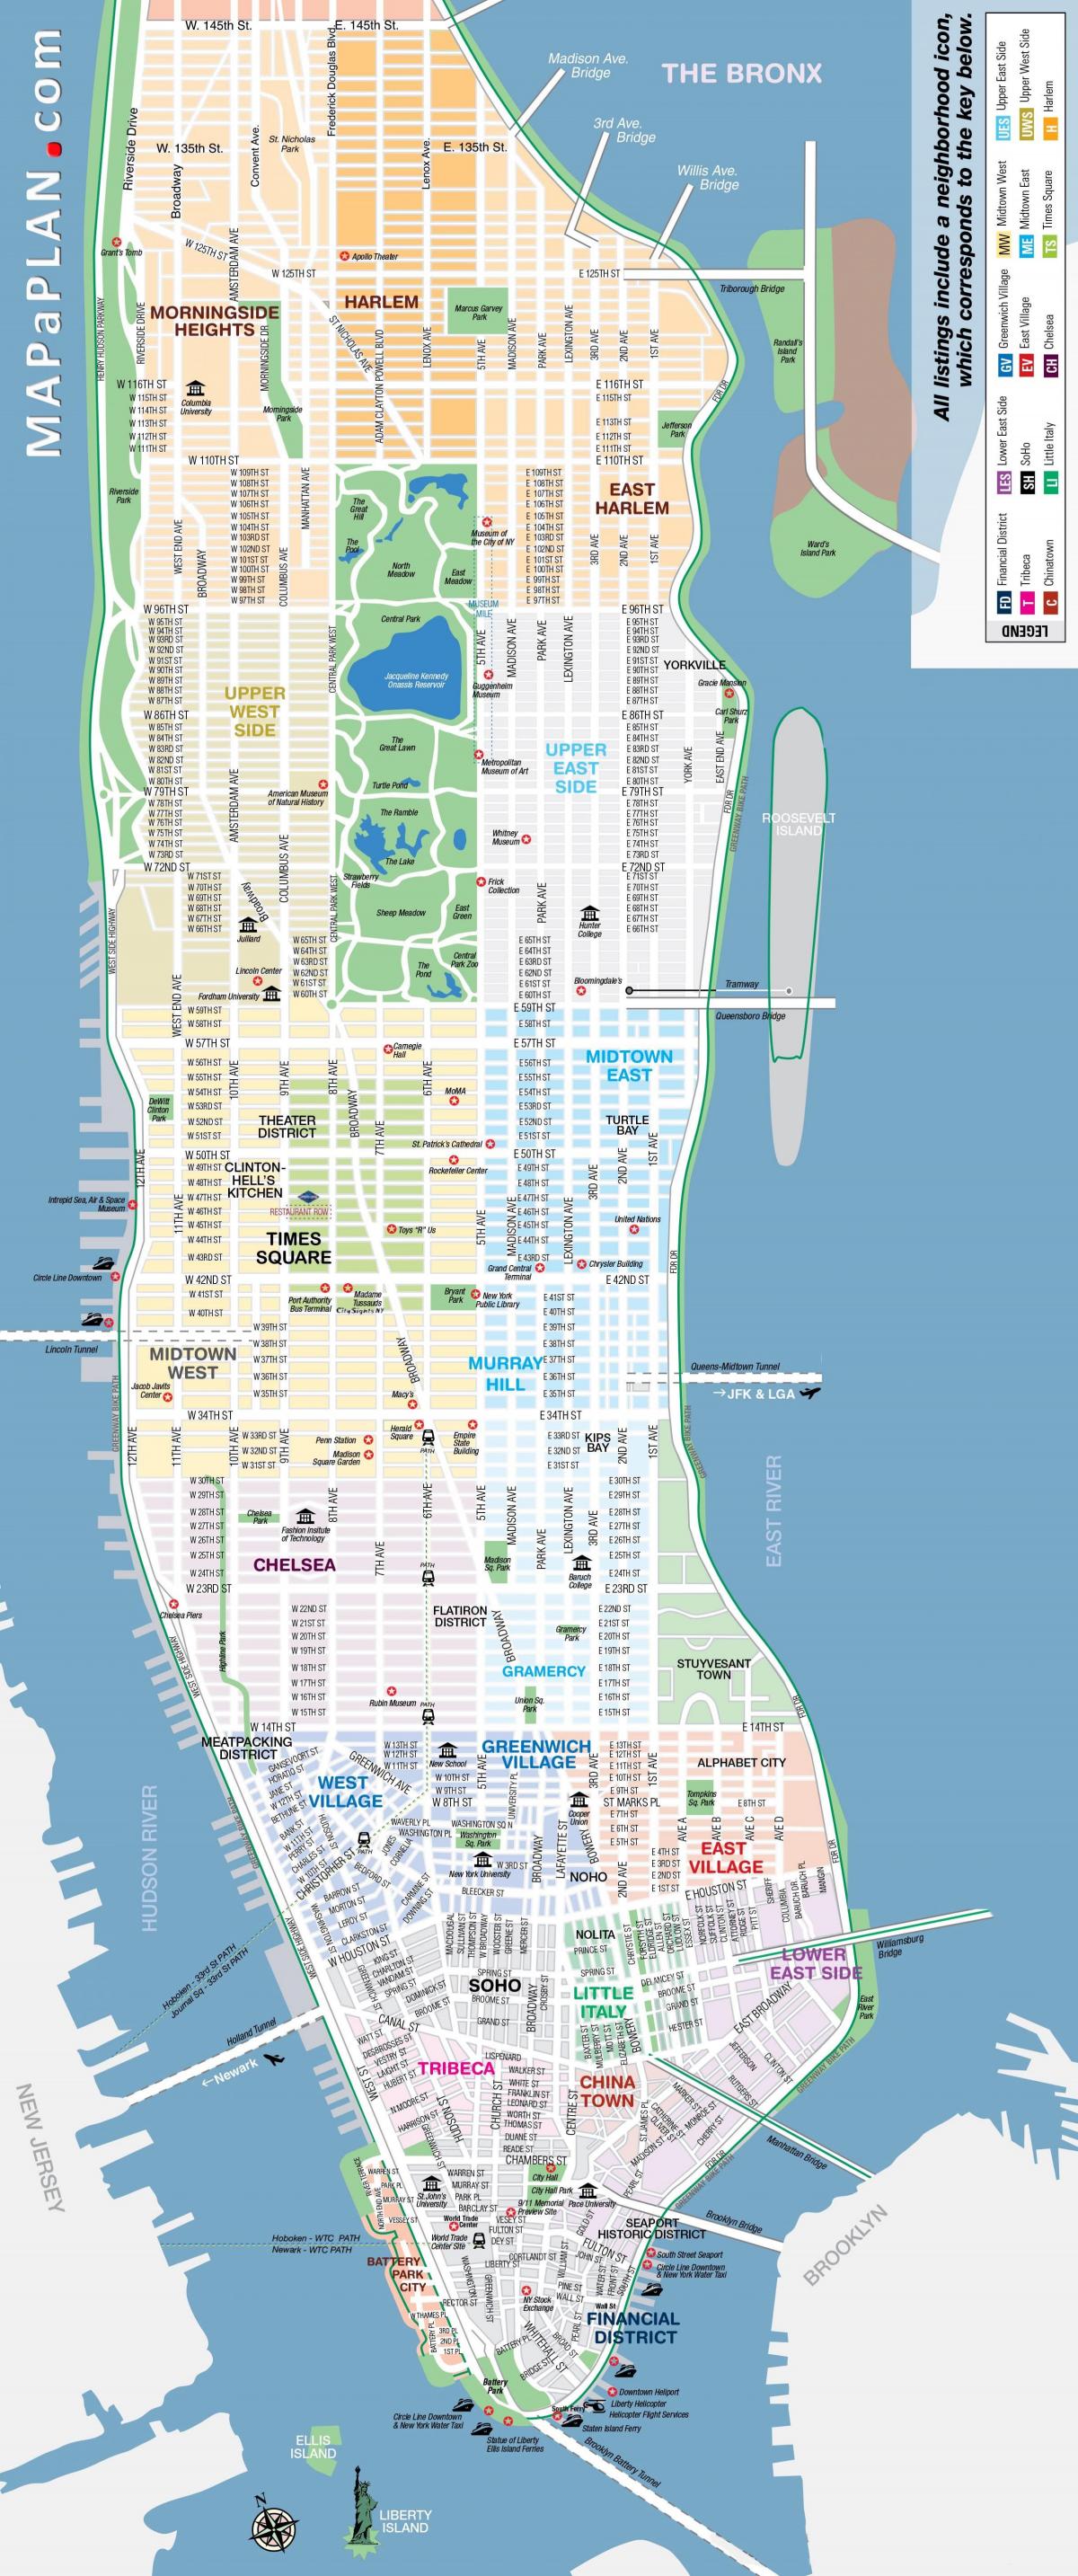 Mapa das ruas de Manhattan